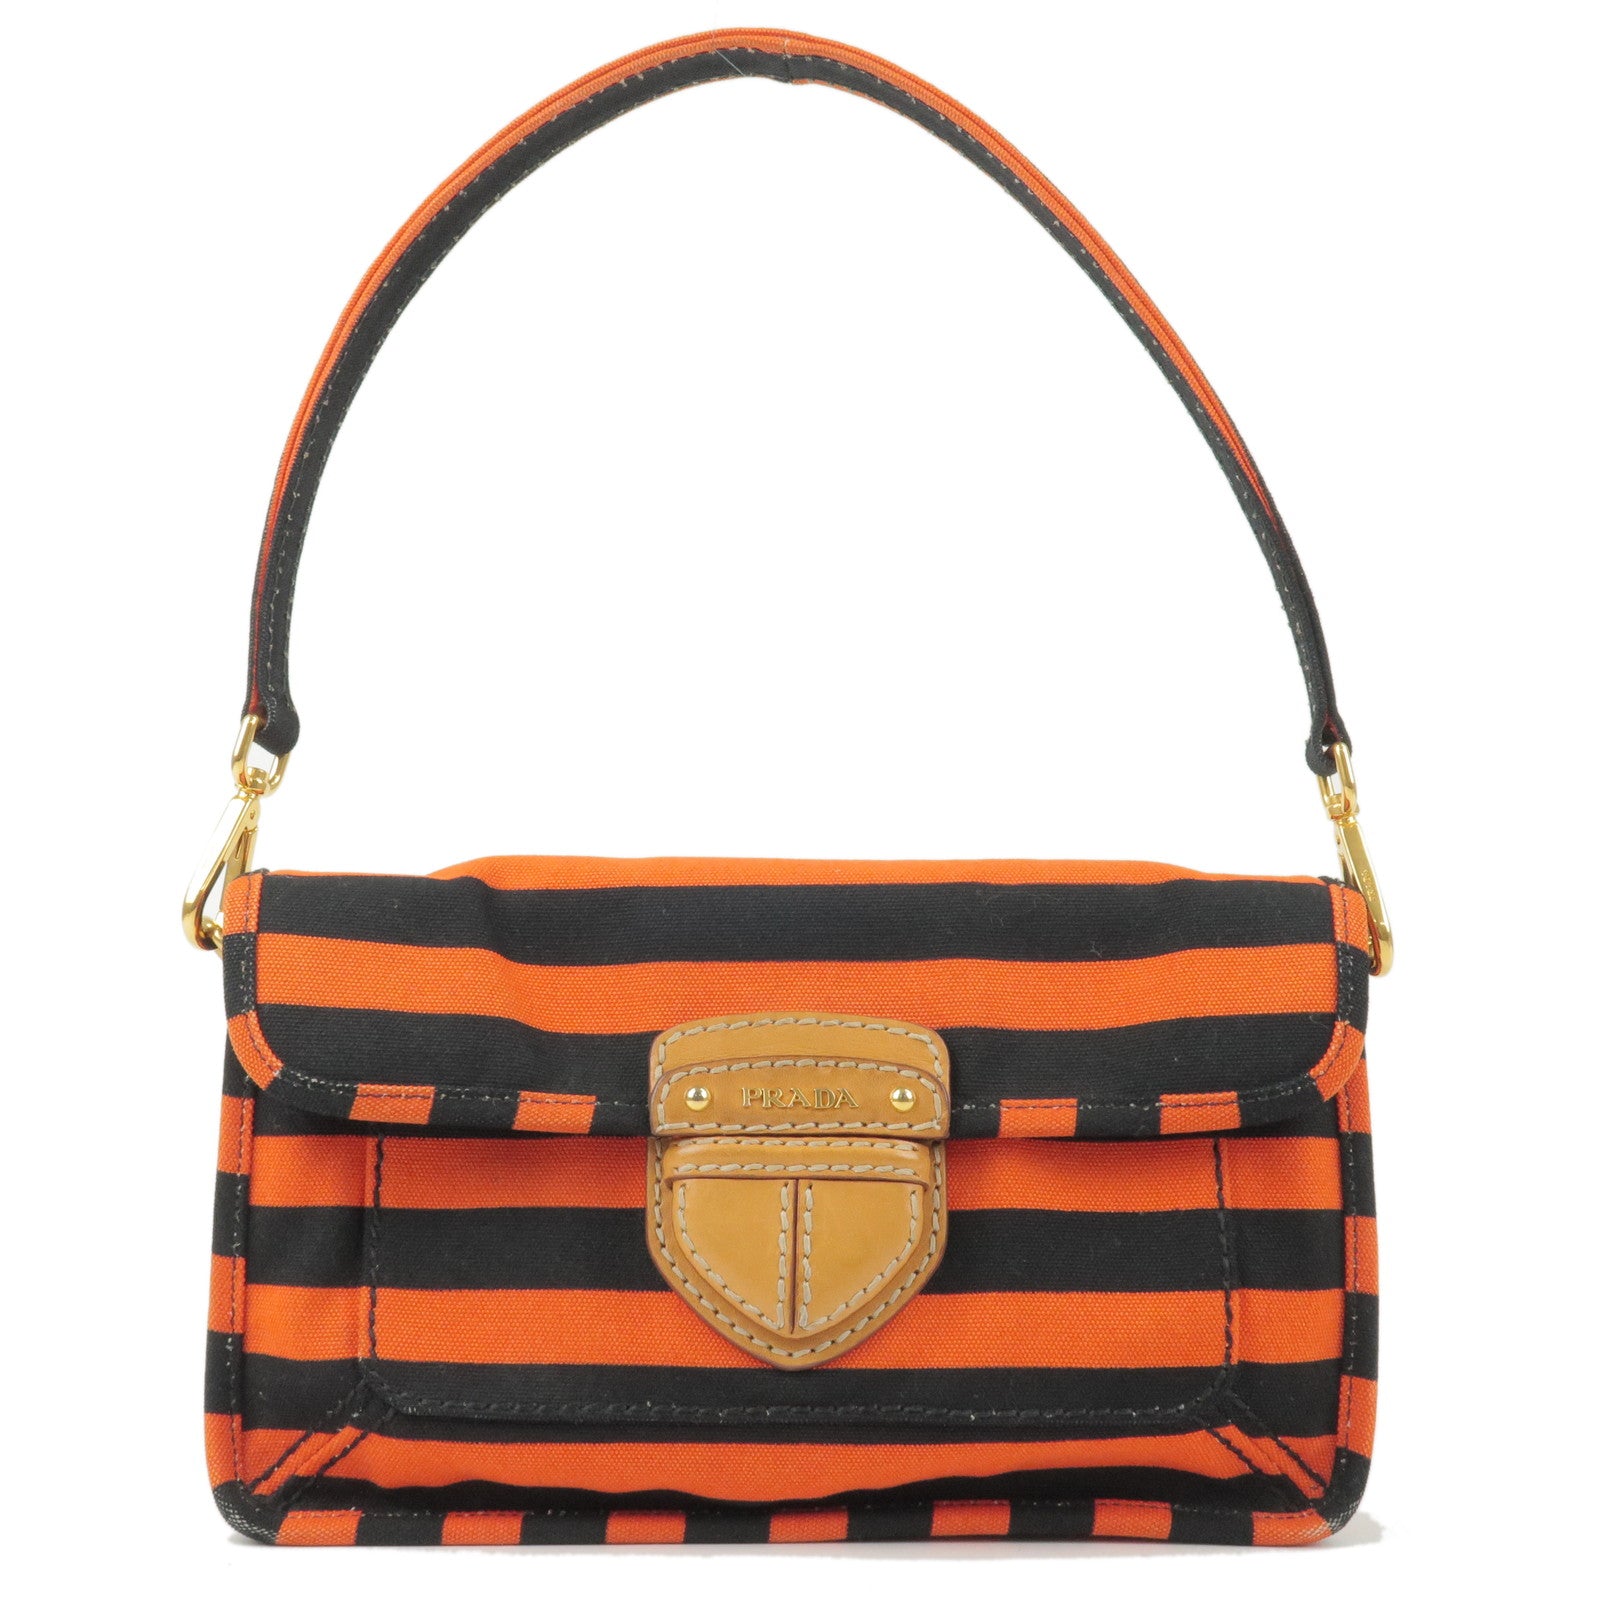 PRADA-Logo-Canvas-Leather-Shoulder-Bag-Hand-Bag-Orange-Black